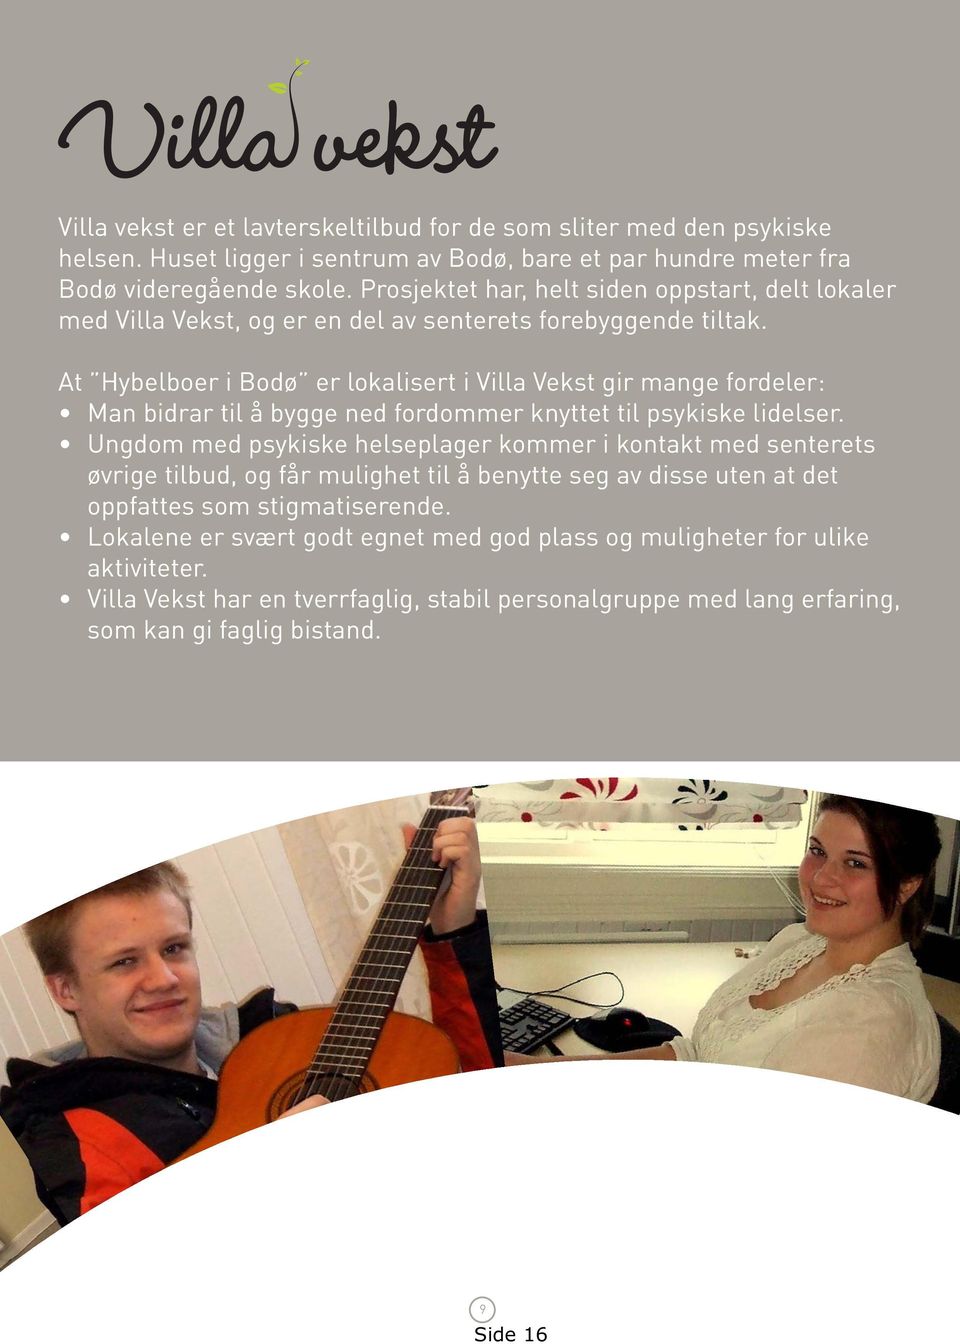 At Hybelboer i Bodø er lokalisert i Villa Vekst gir mange fordeler: Man bidrar til å bygge ned fordommer knyttet til psykiske lidelser.